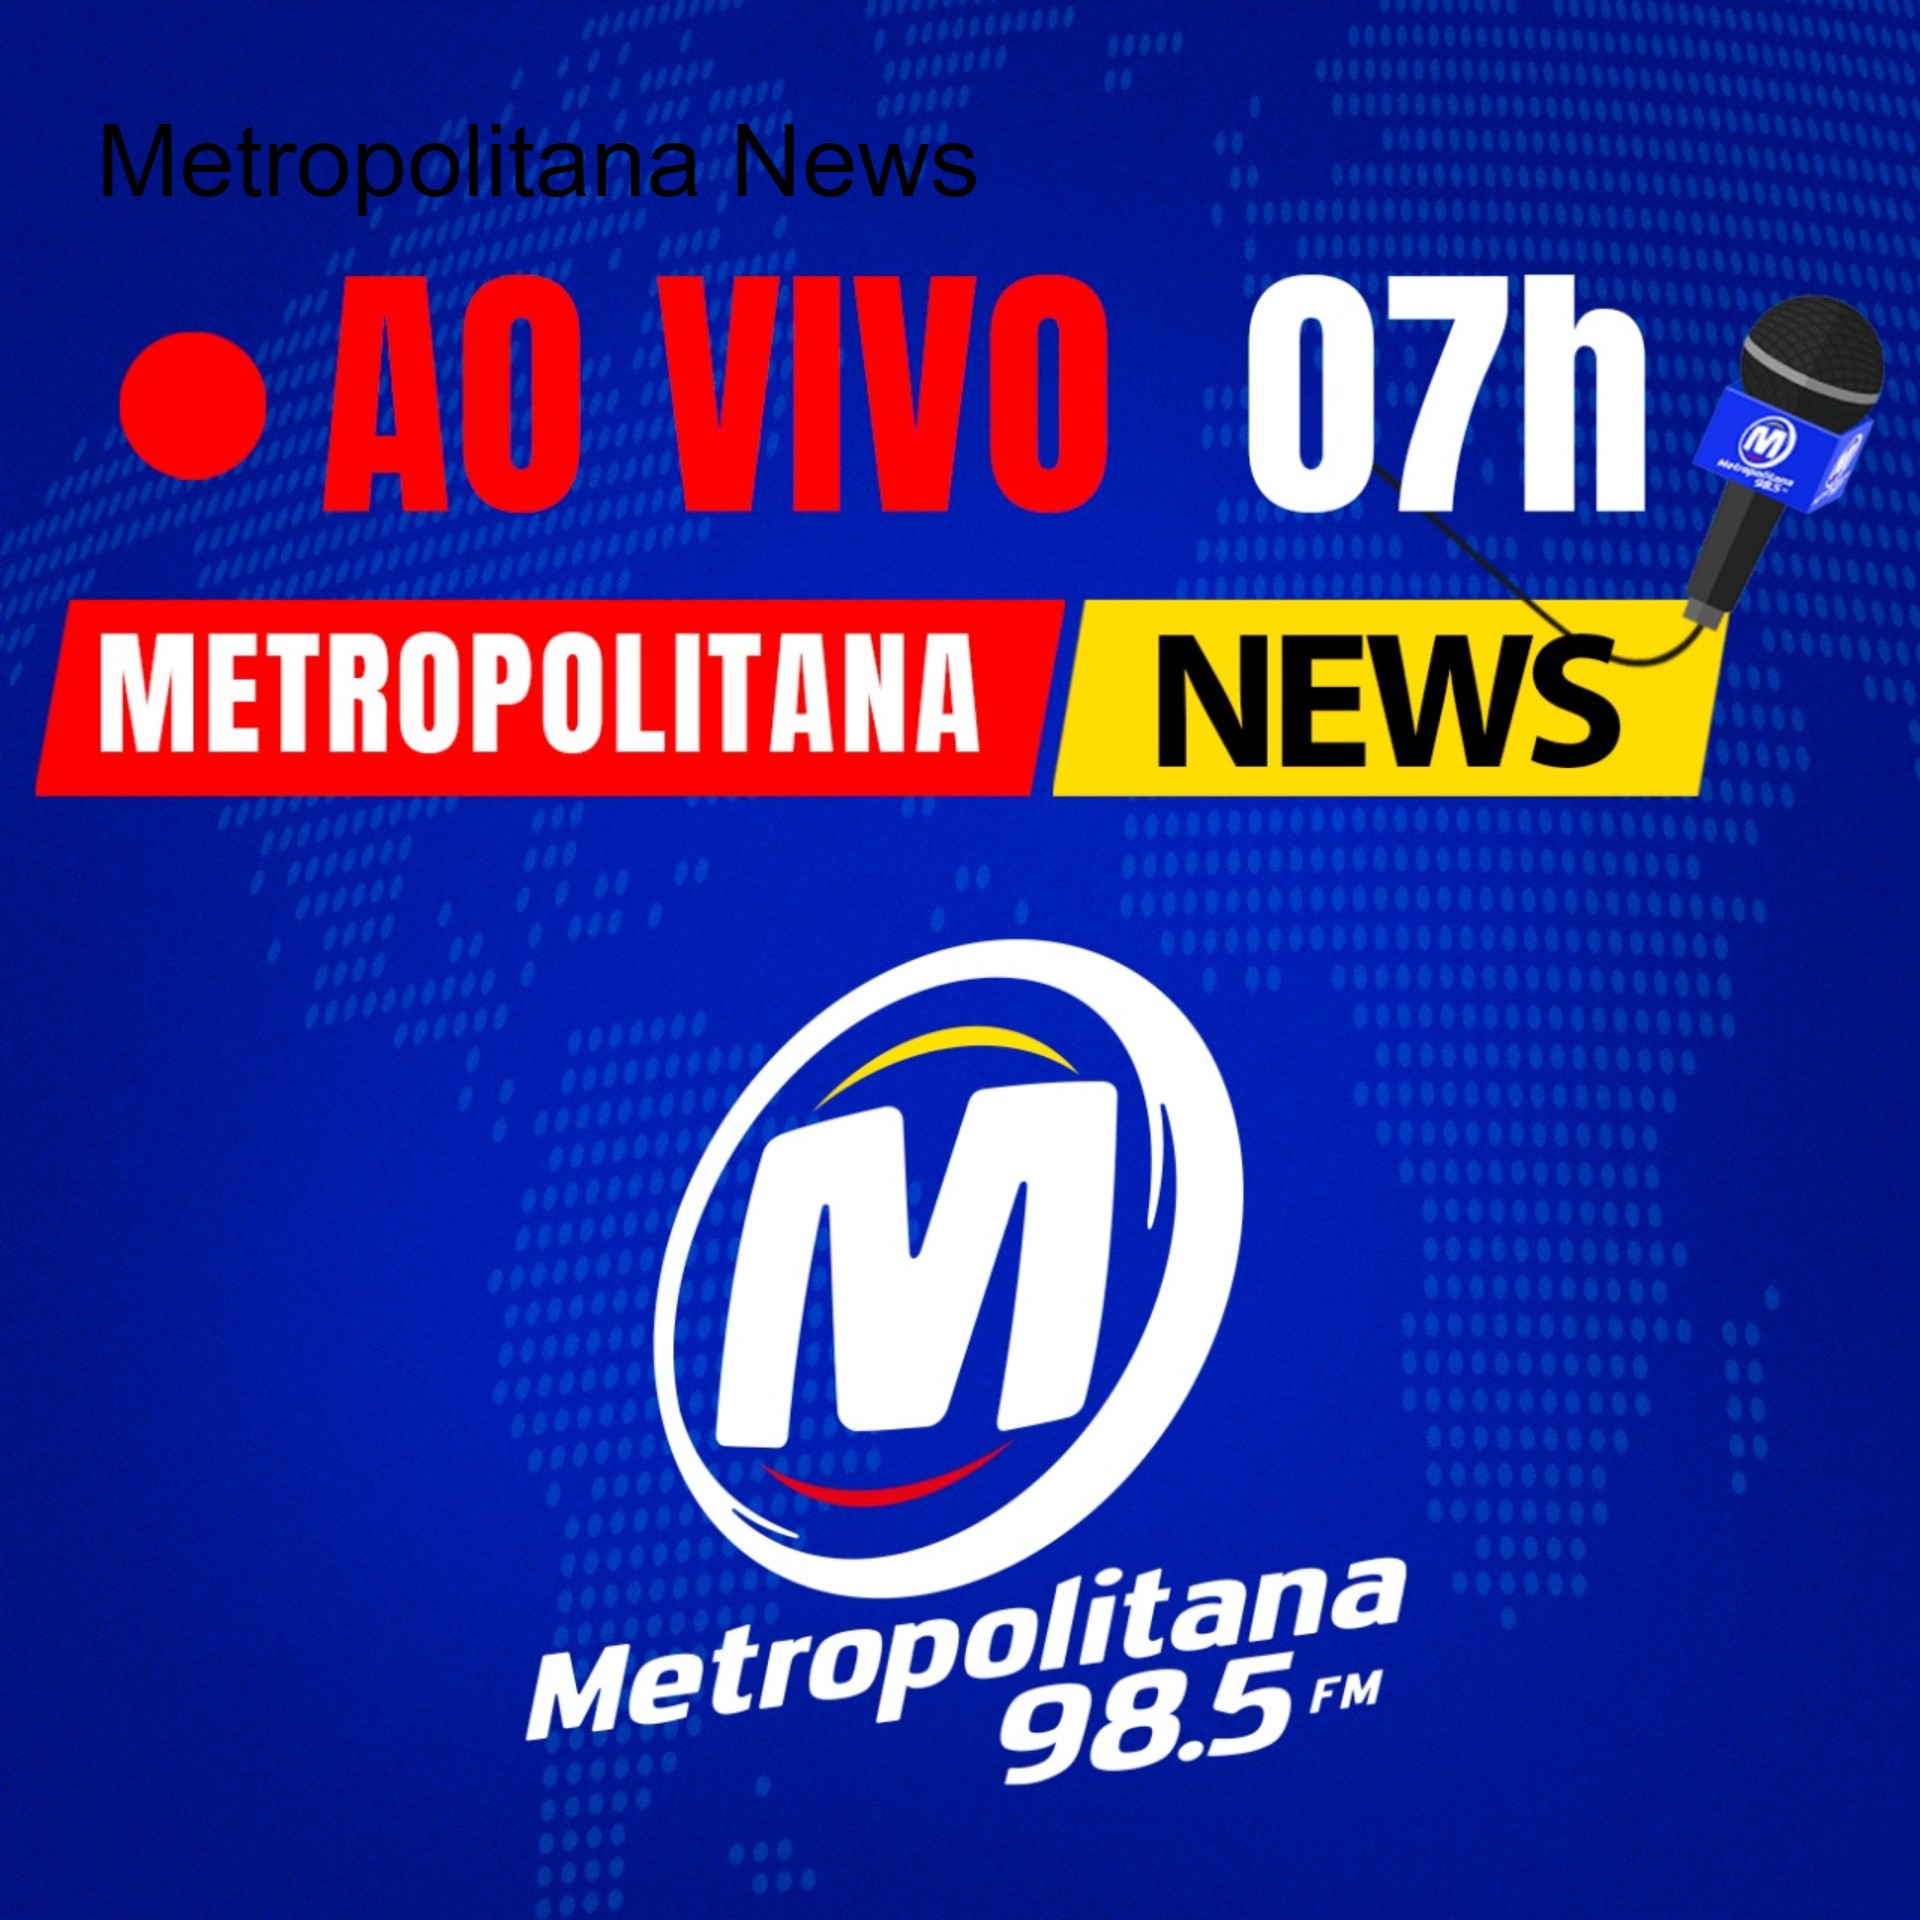 Metropolitana News